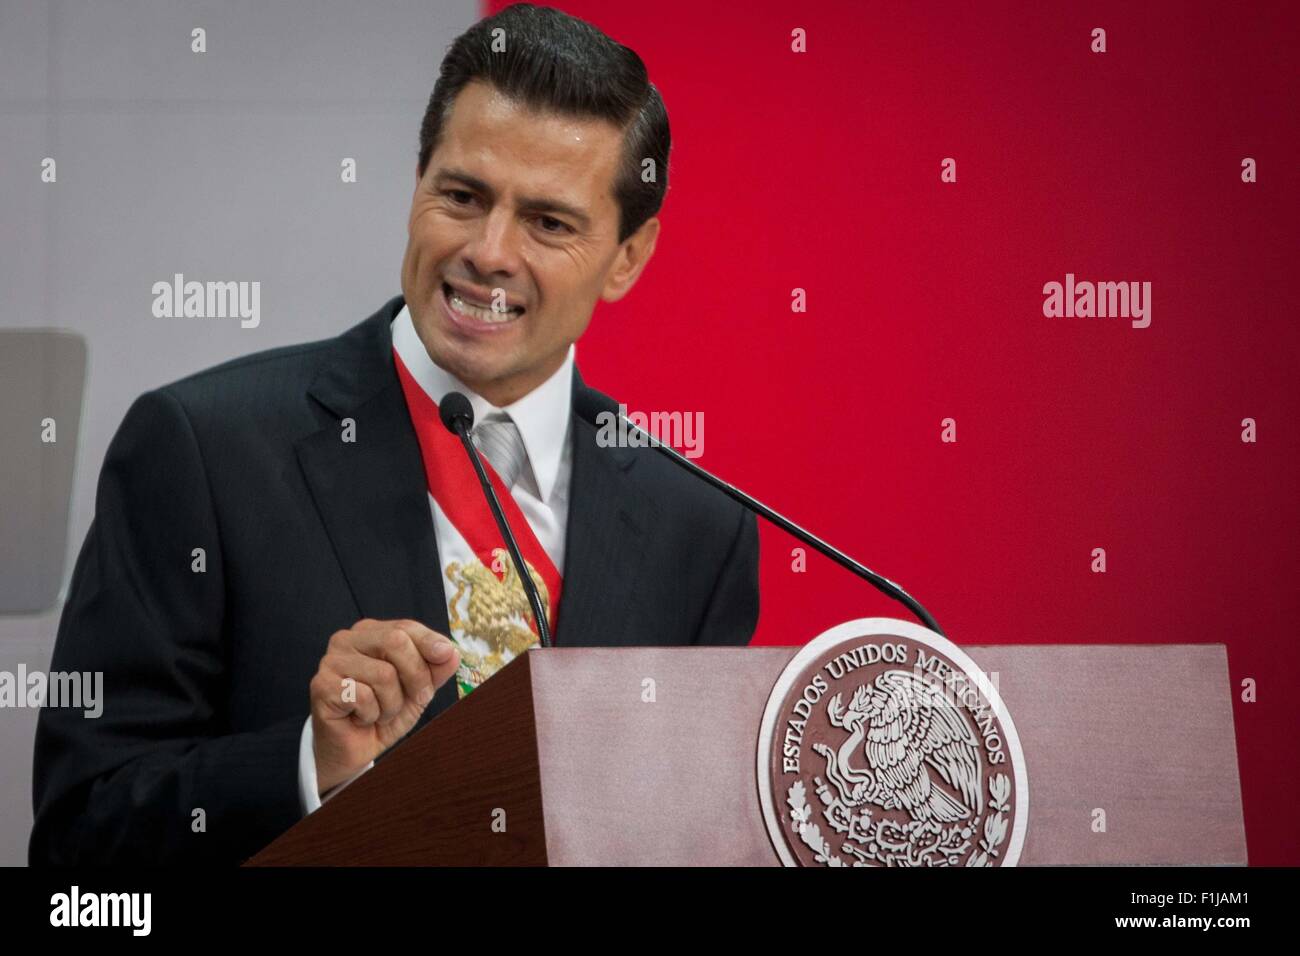 Mexico City, Mexiko. 2. Sep, 2015. Mexikanische Präsident Enrique Pena Nieto liefert seinen dritten Zustand der Nation-Bericht in Mexiko-Stadt, Hauptstadt von Mexiko, am 2. September 2015. © Pedro Mera/Xinhua/Alamy Live-Nachrichten Stockfoto